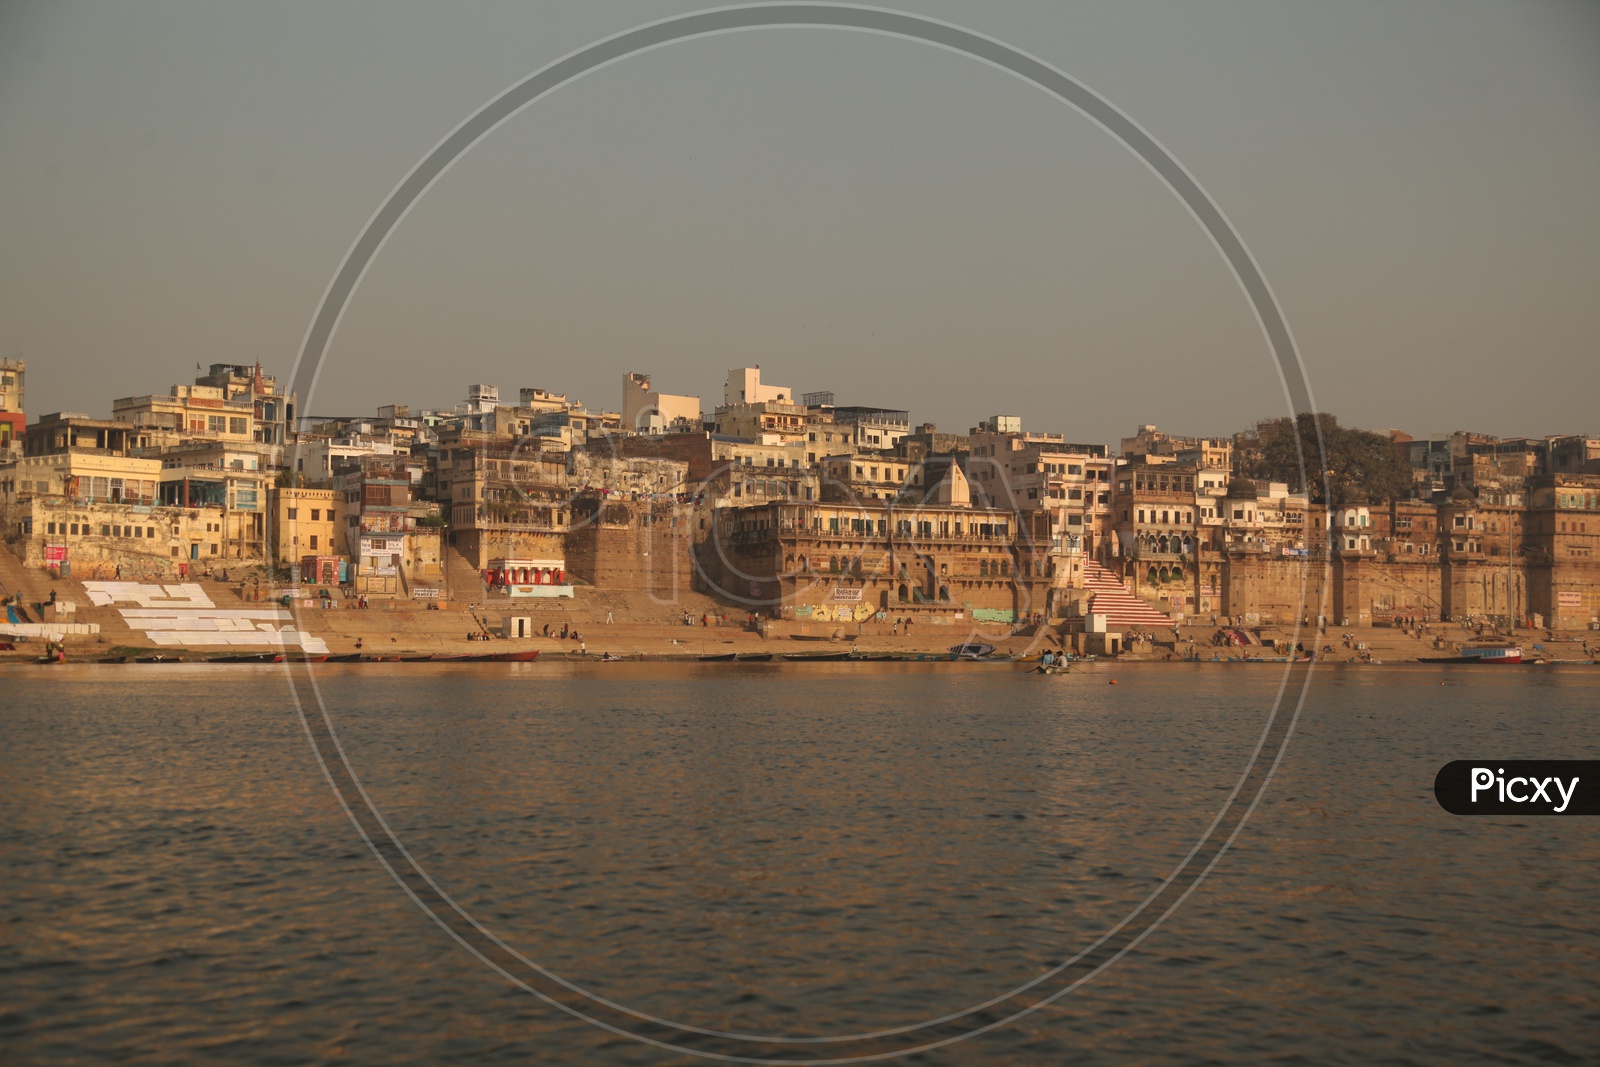 Long view of Varanasi Ghats with boats and visitors